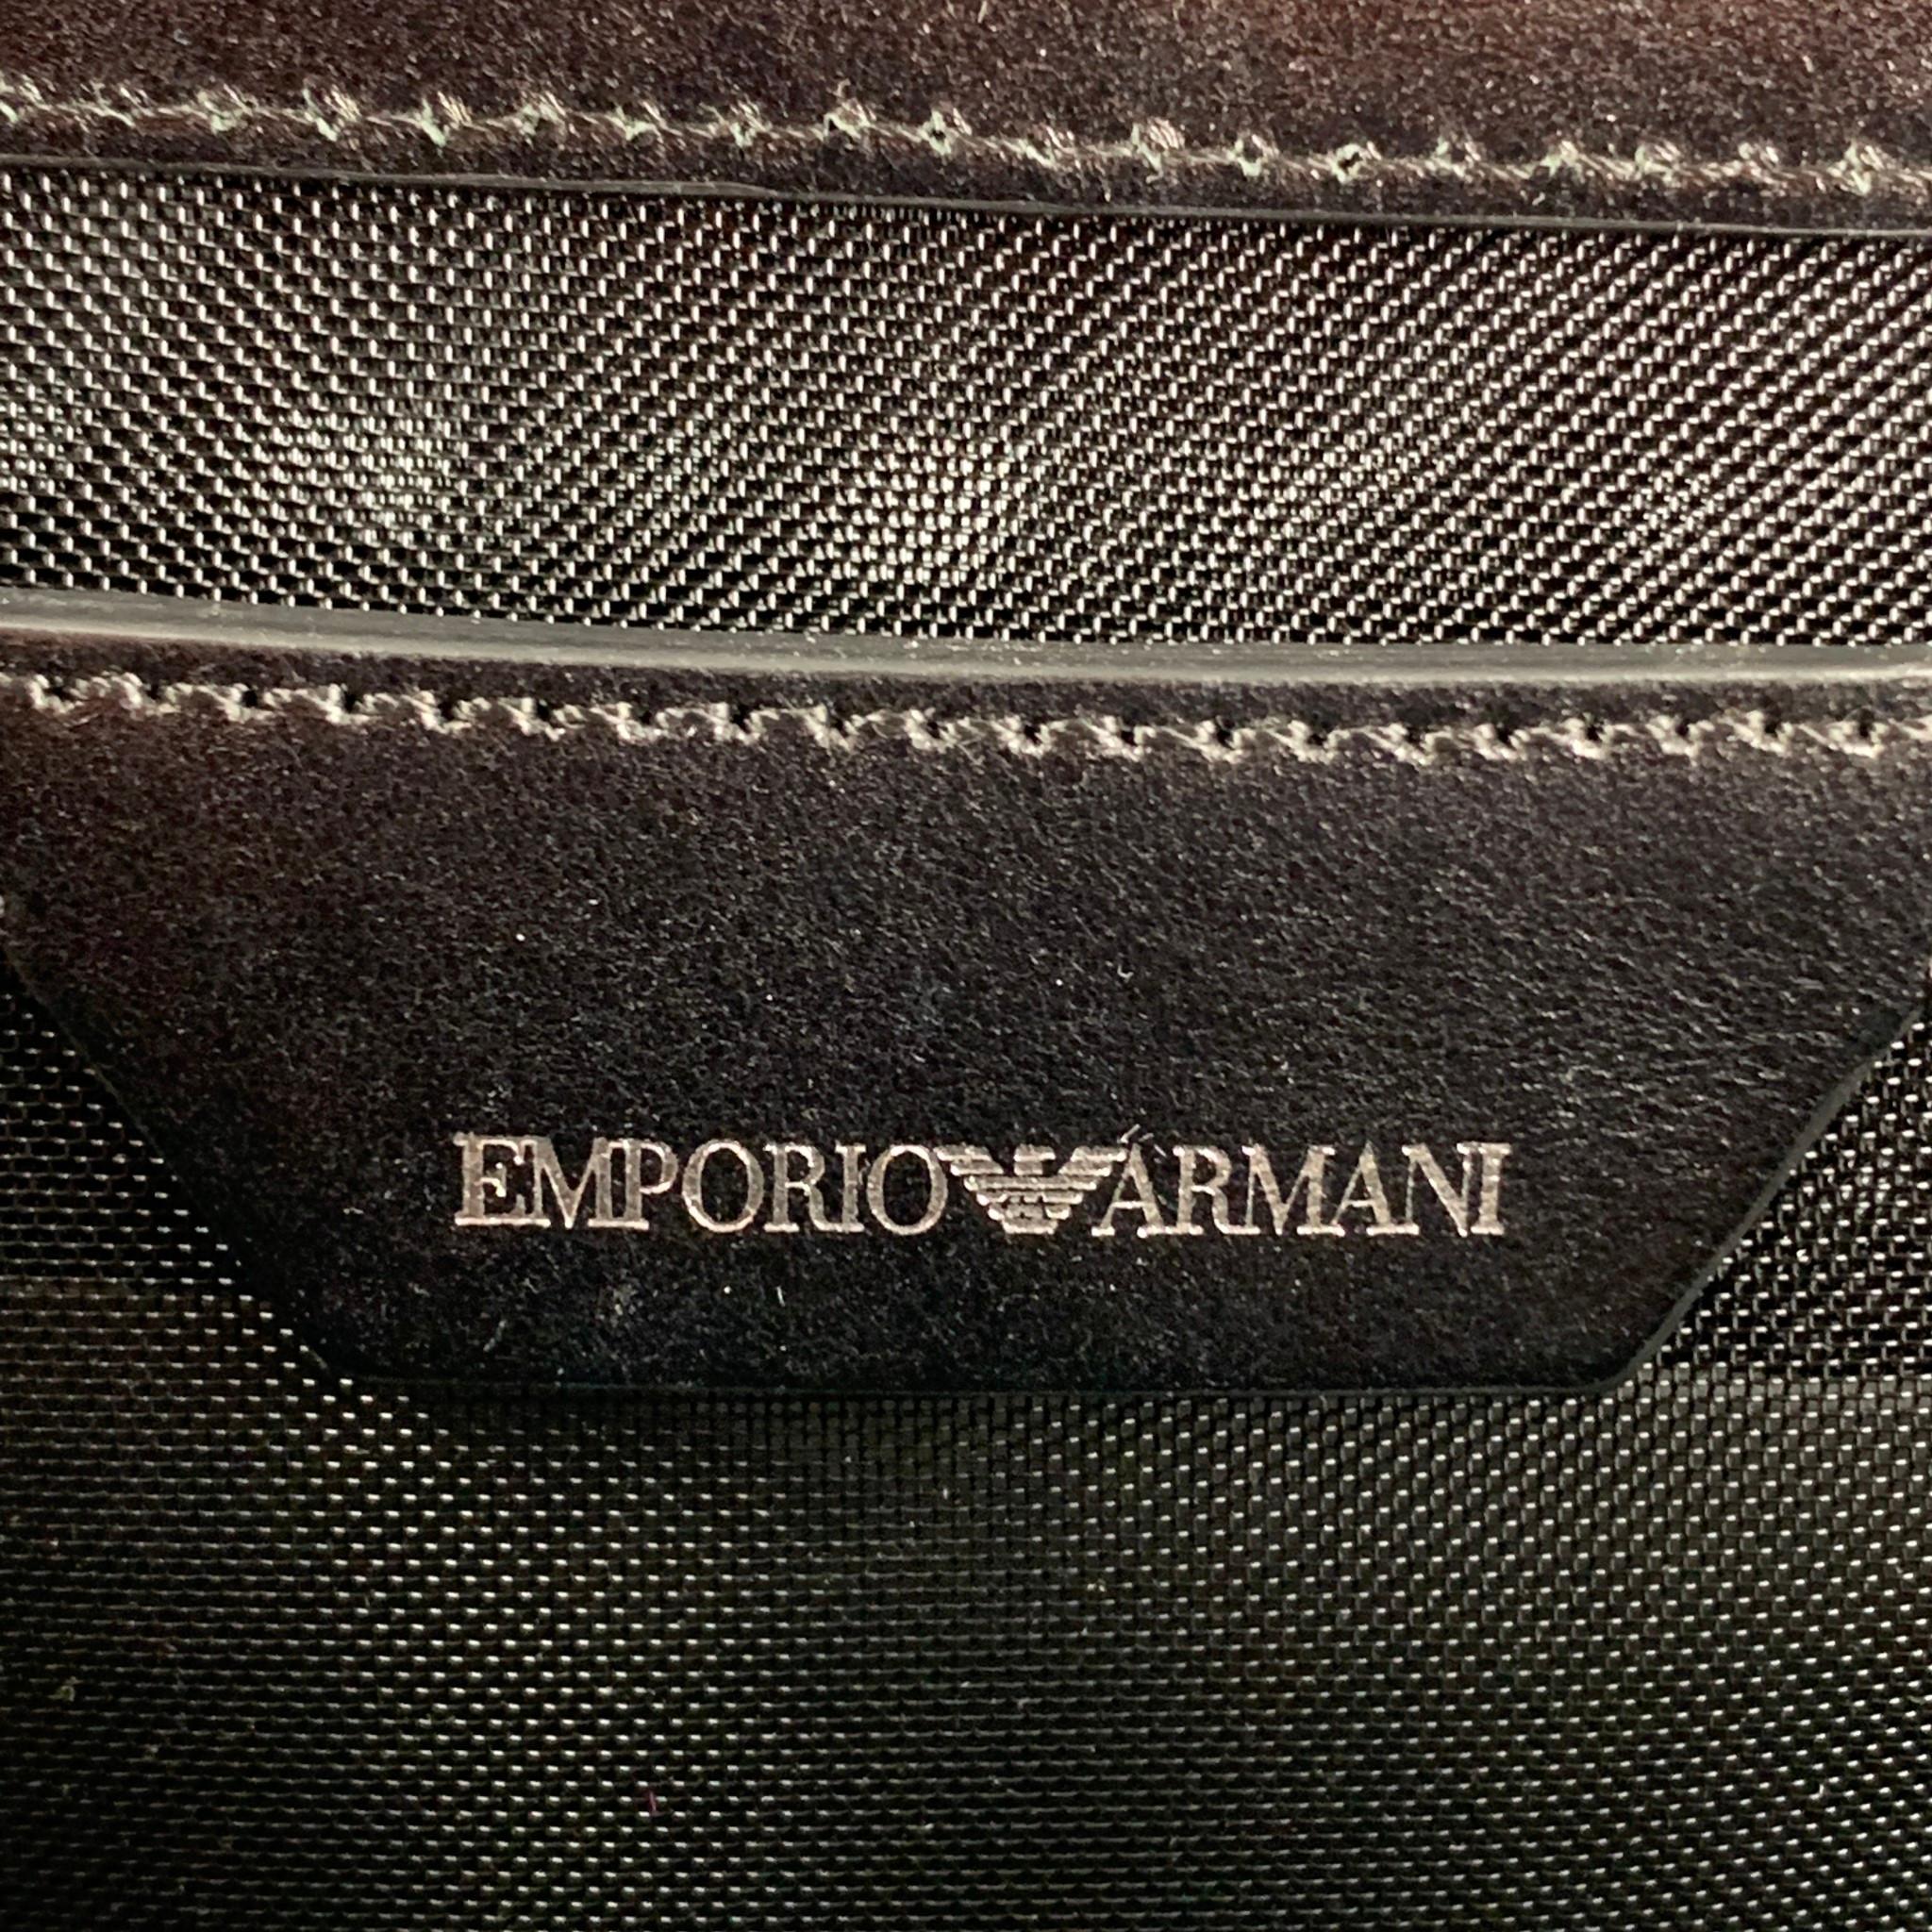 EMPORIO ARMANI Black Silver Mesh Leather Nylon Handbag 3